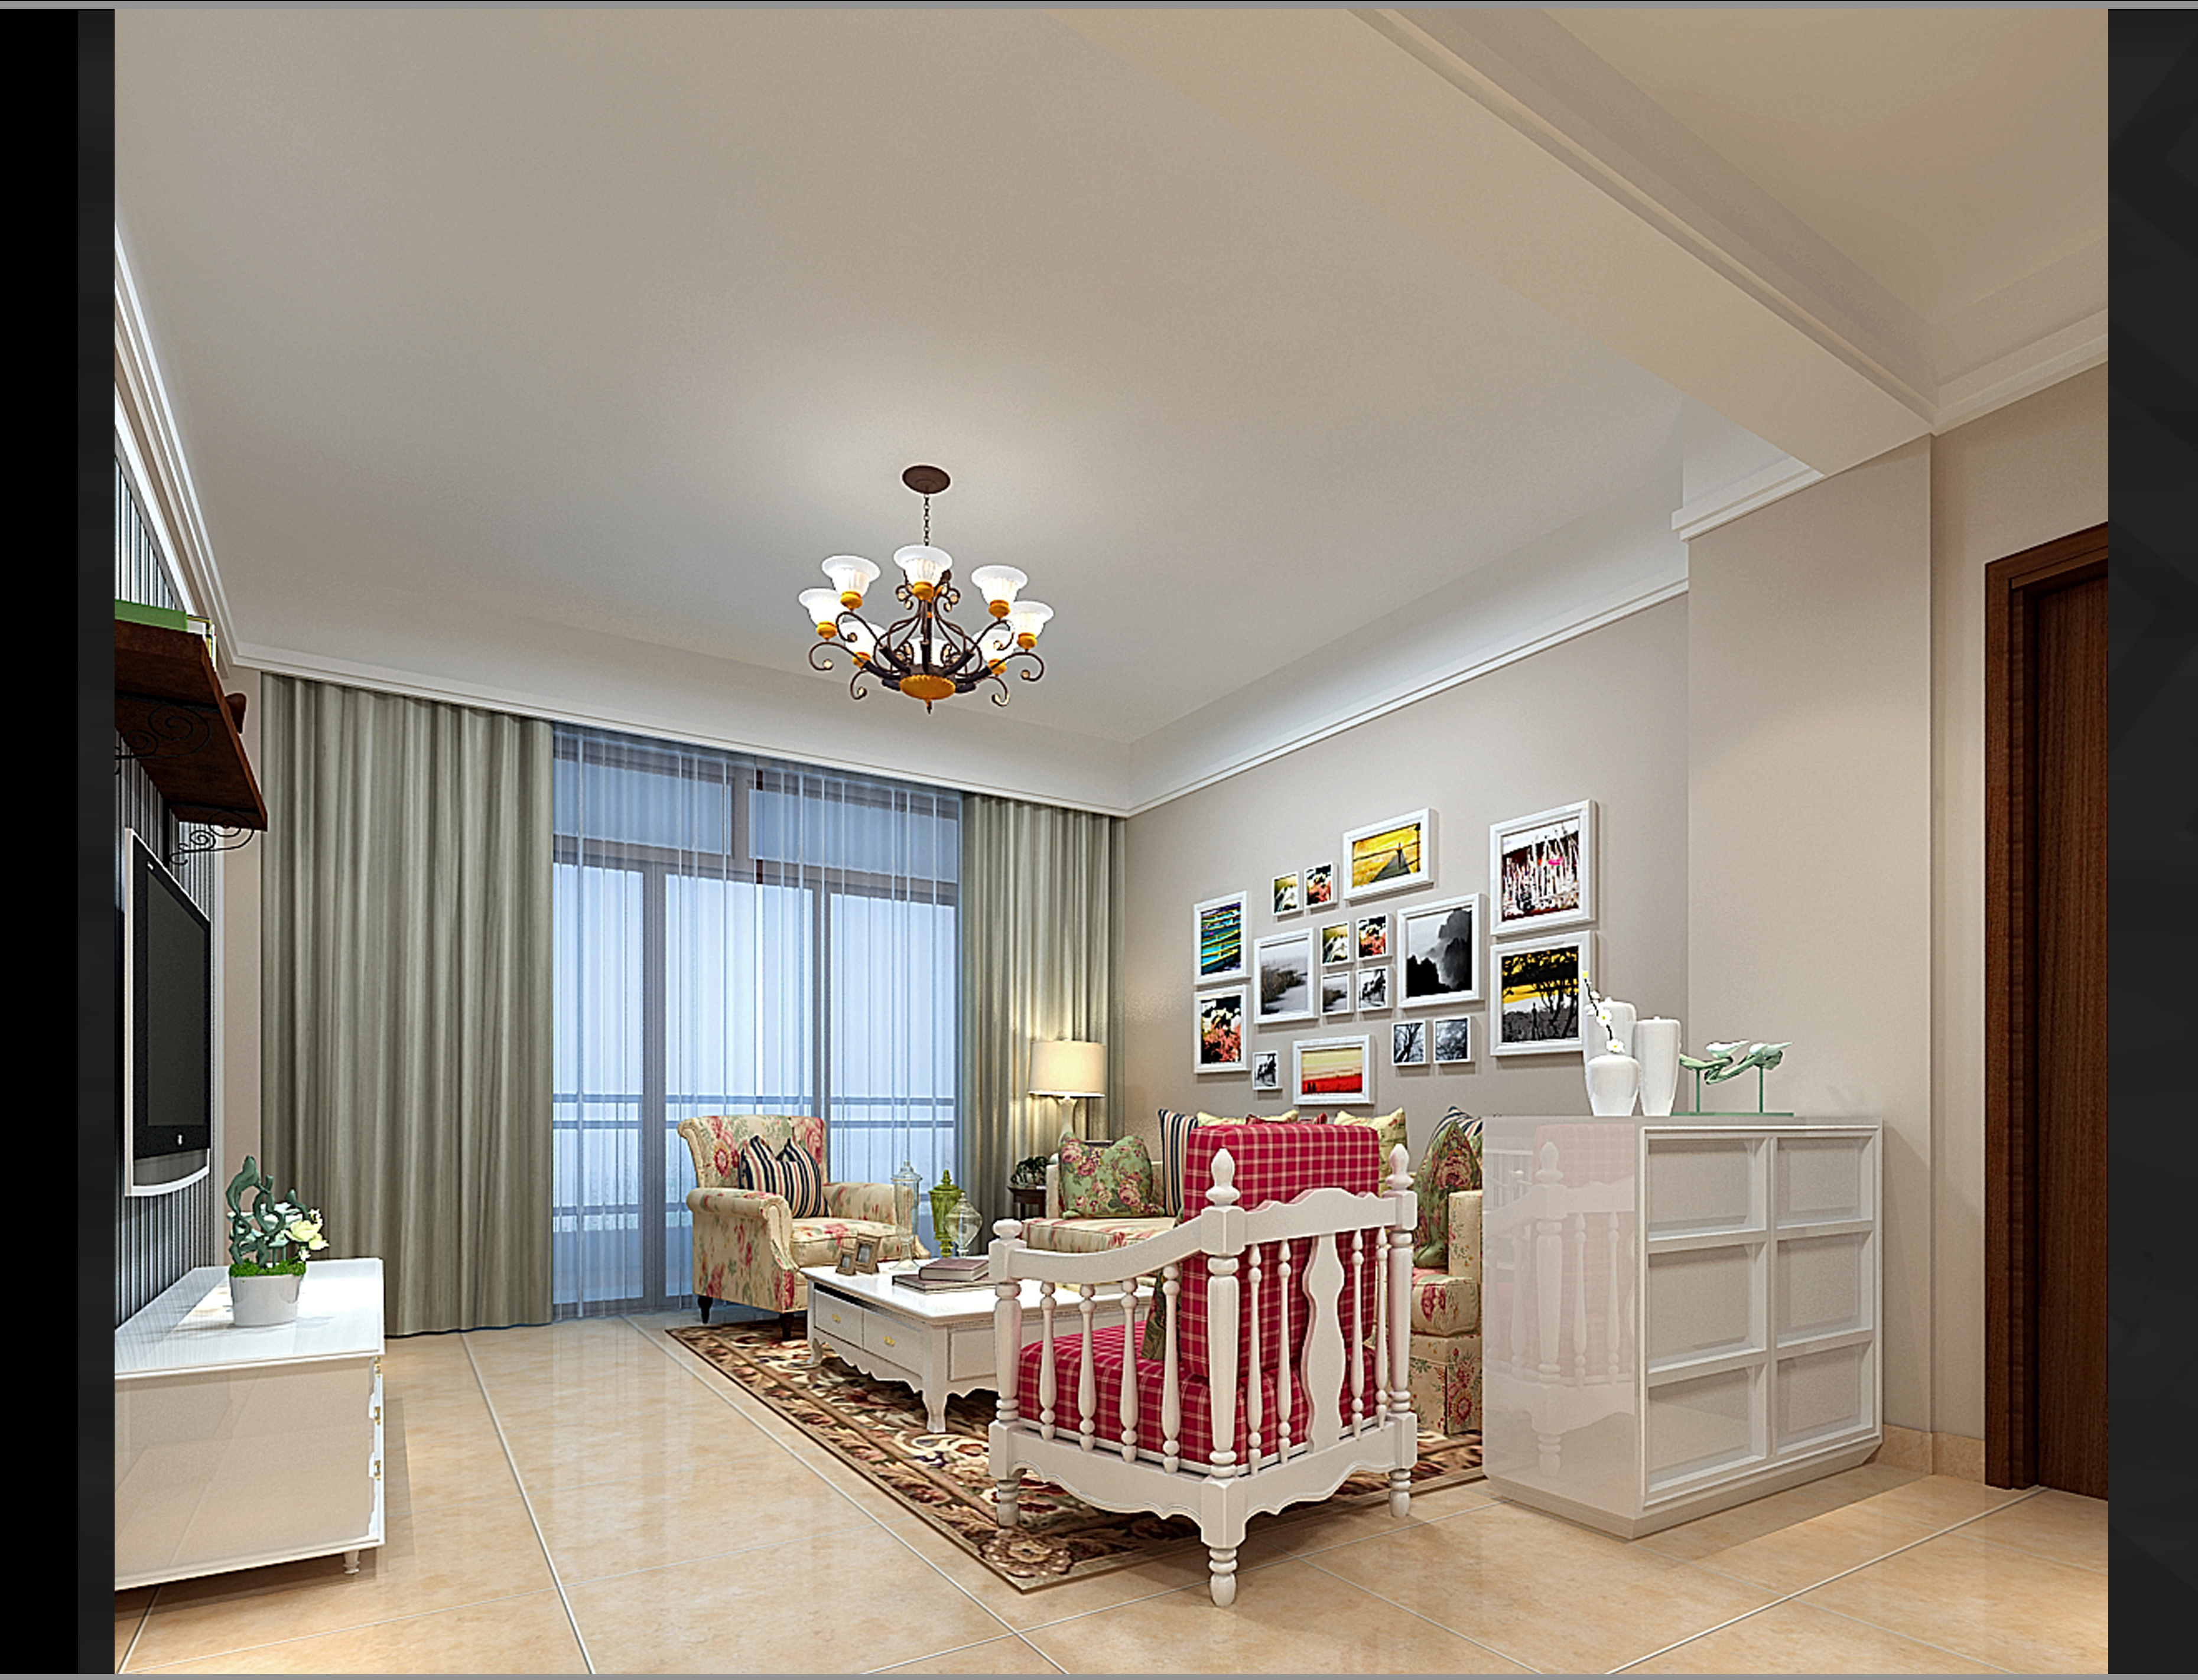 客厅作为待客区域,一般要求简洁明快,同时装修较其它空间要更明快光鲜